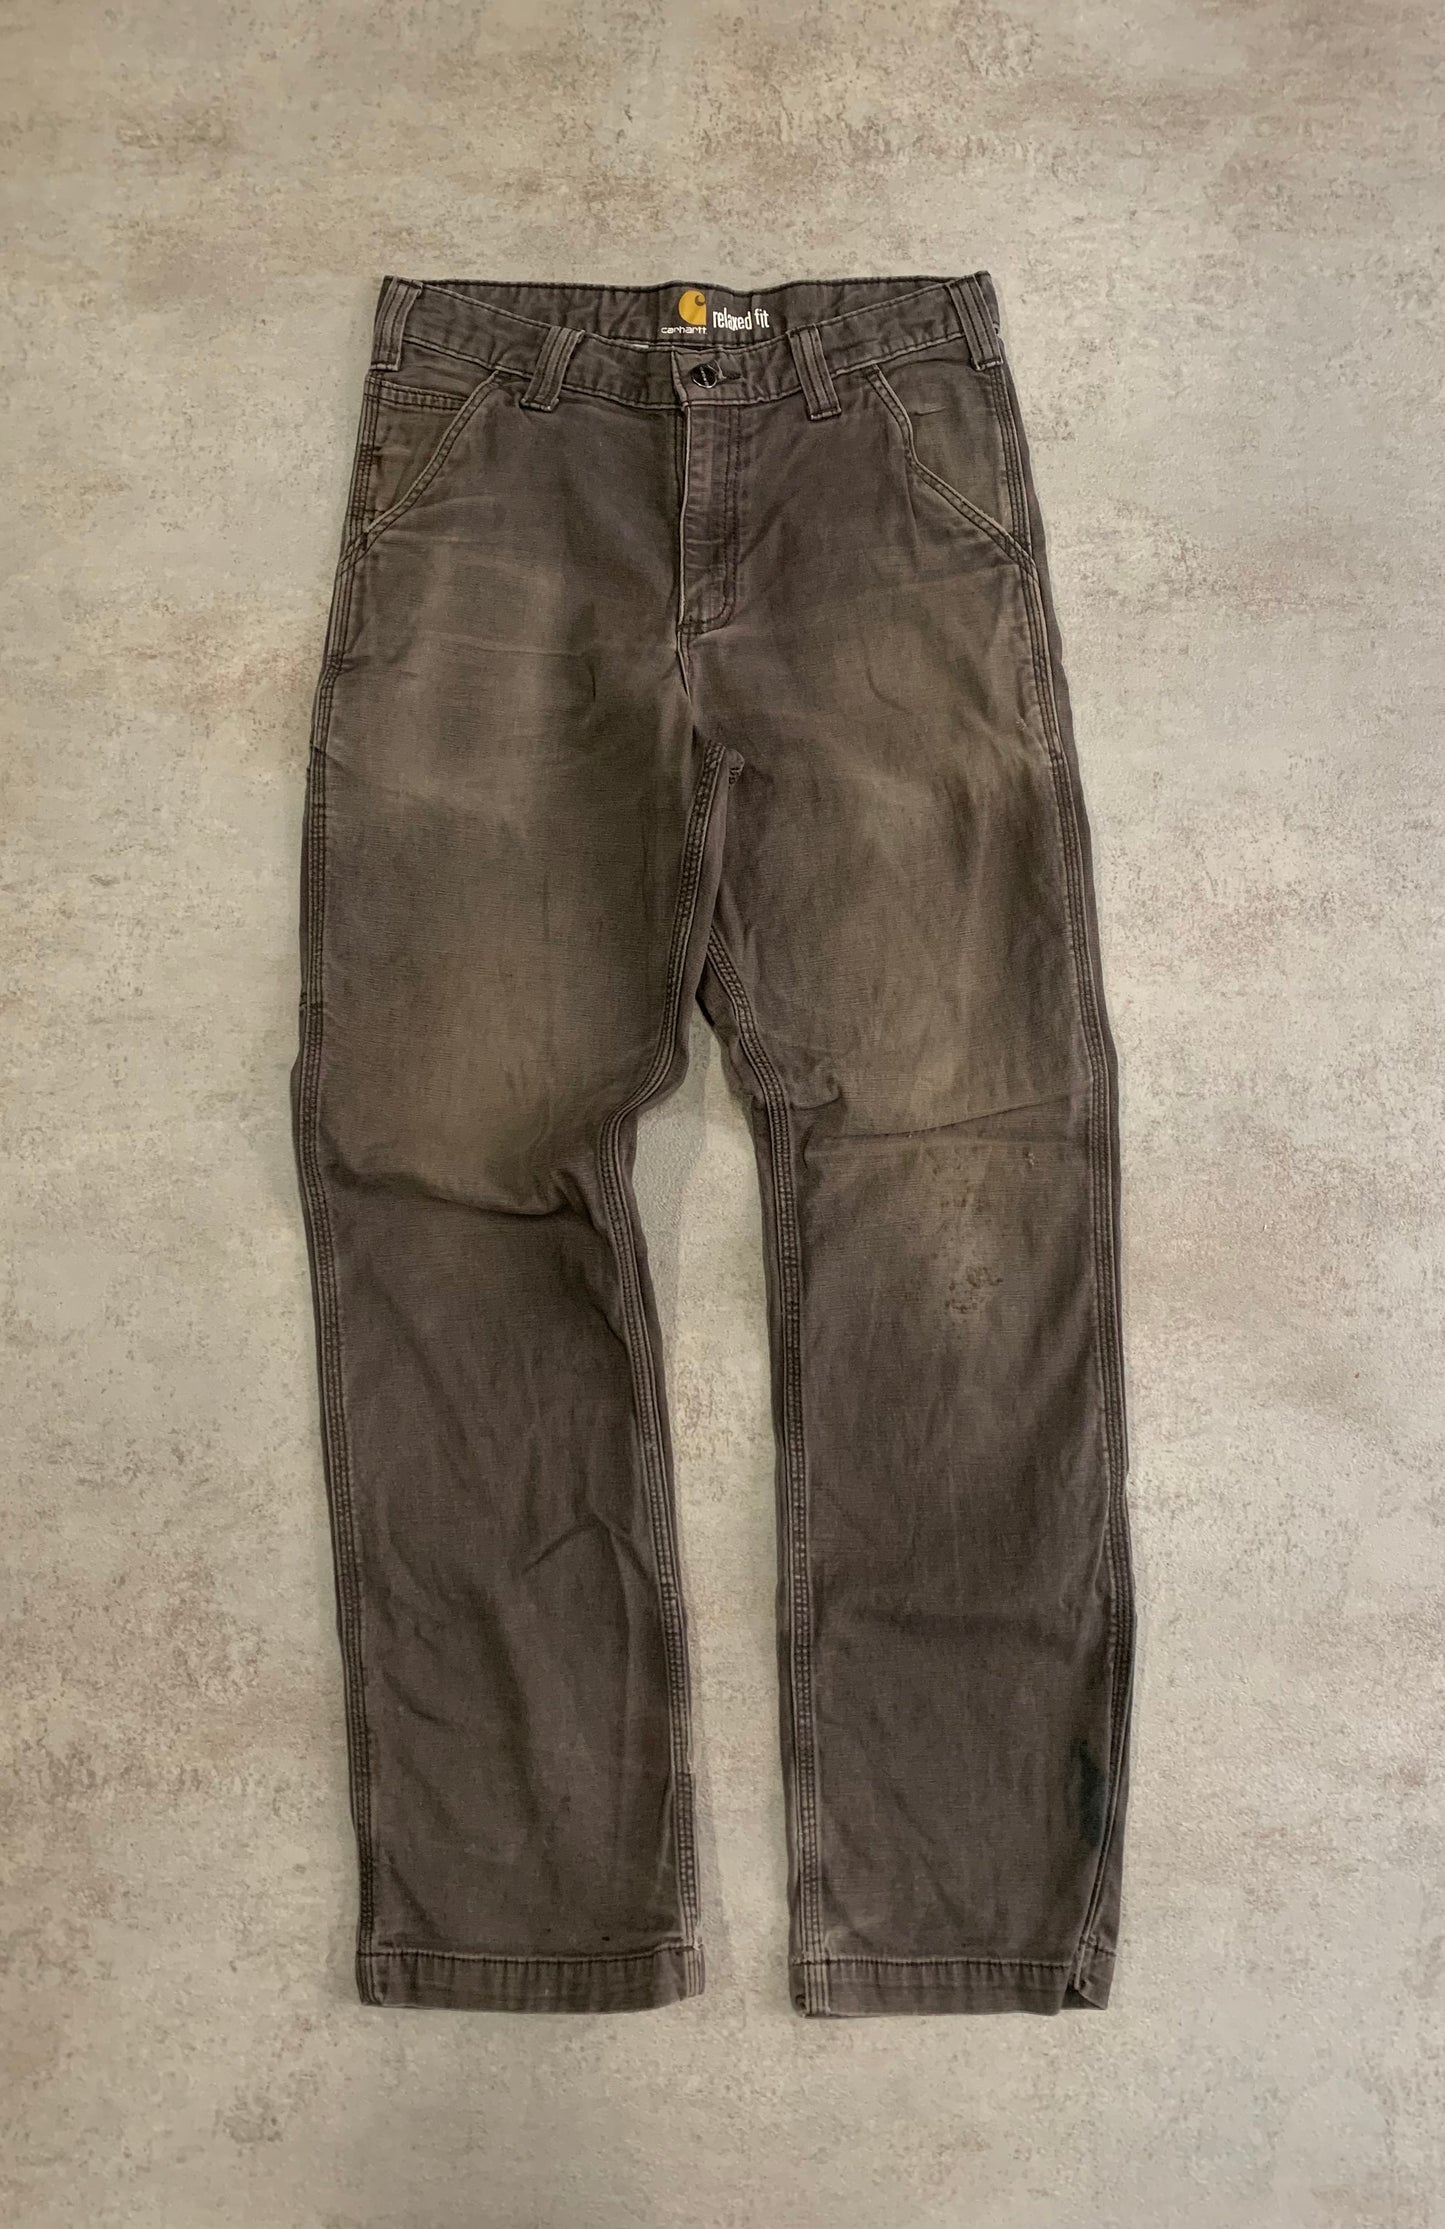 Vintage Carhartt Trashed Pants - M